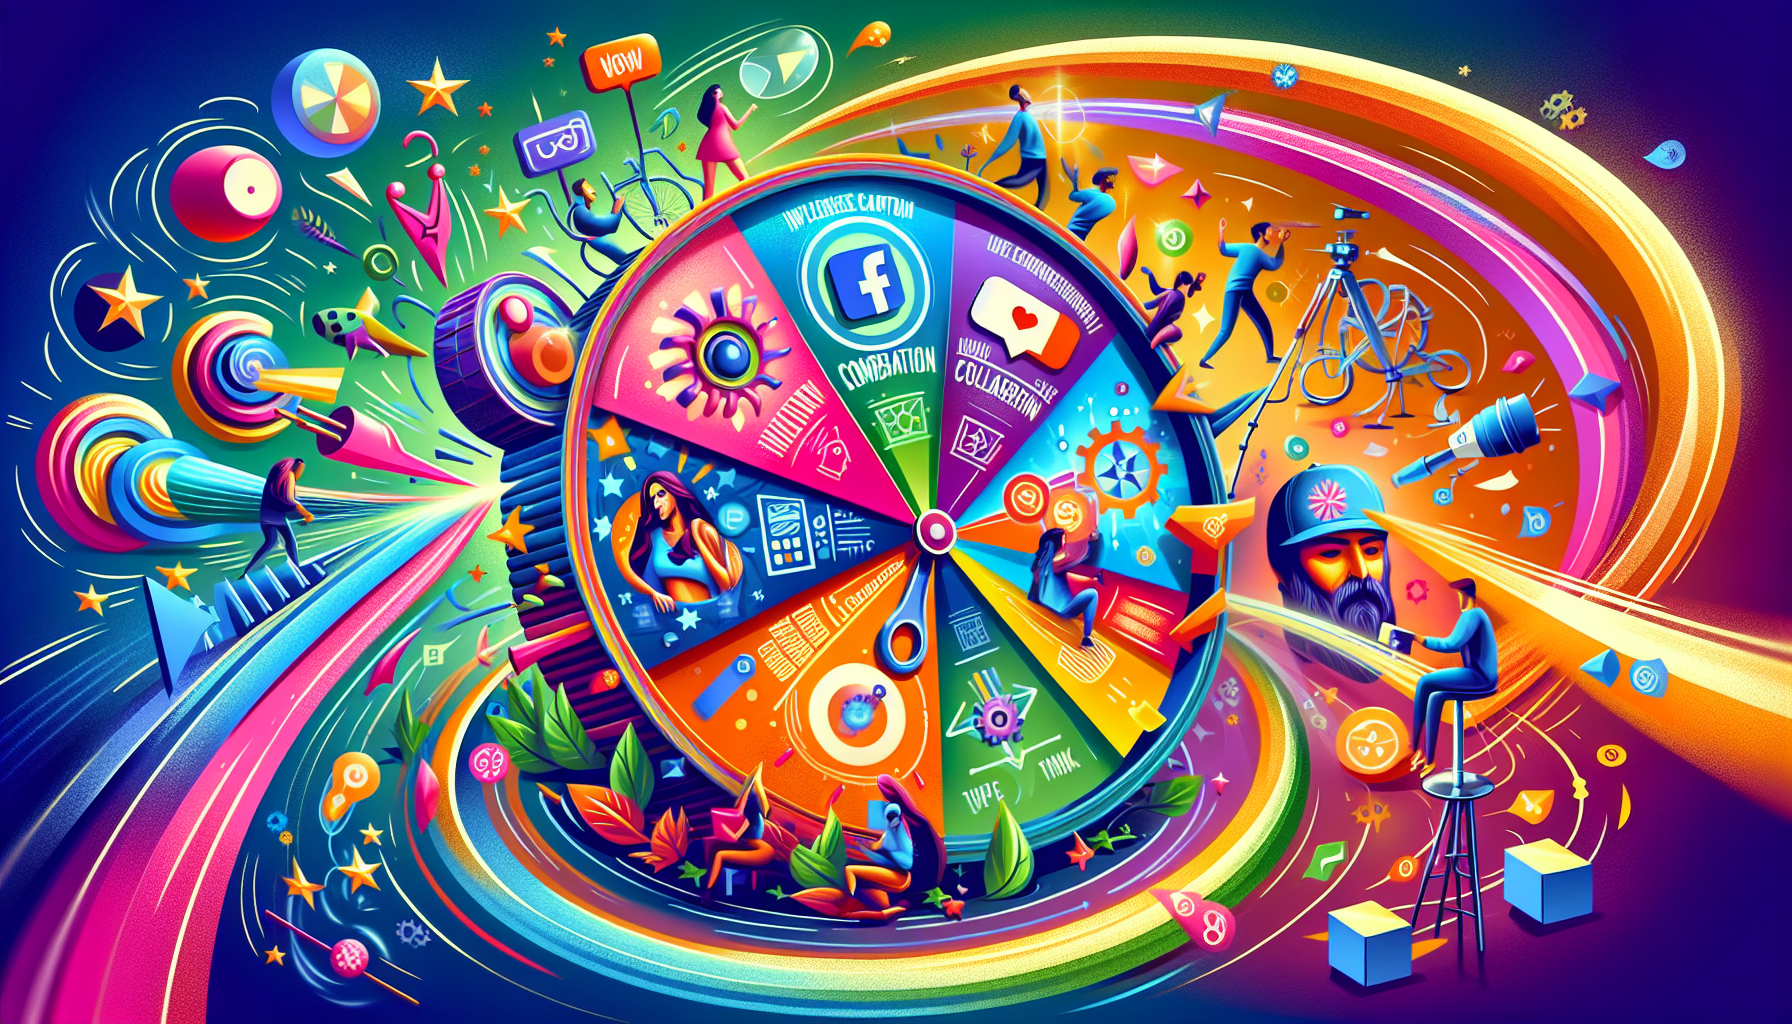 Illustration of social media promotions